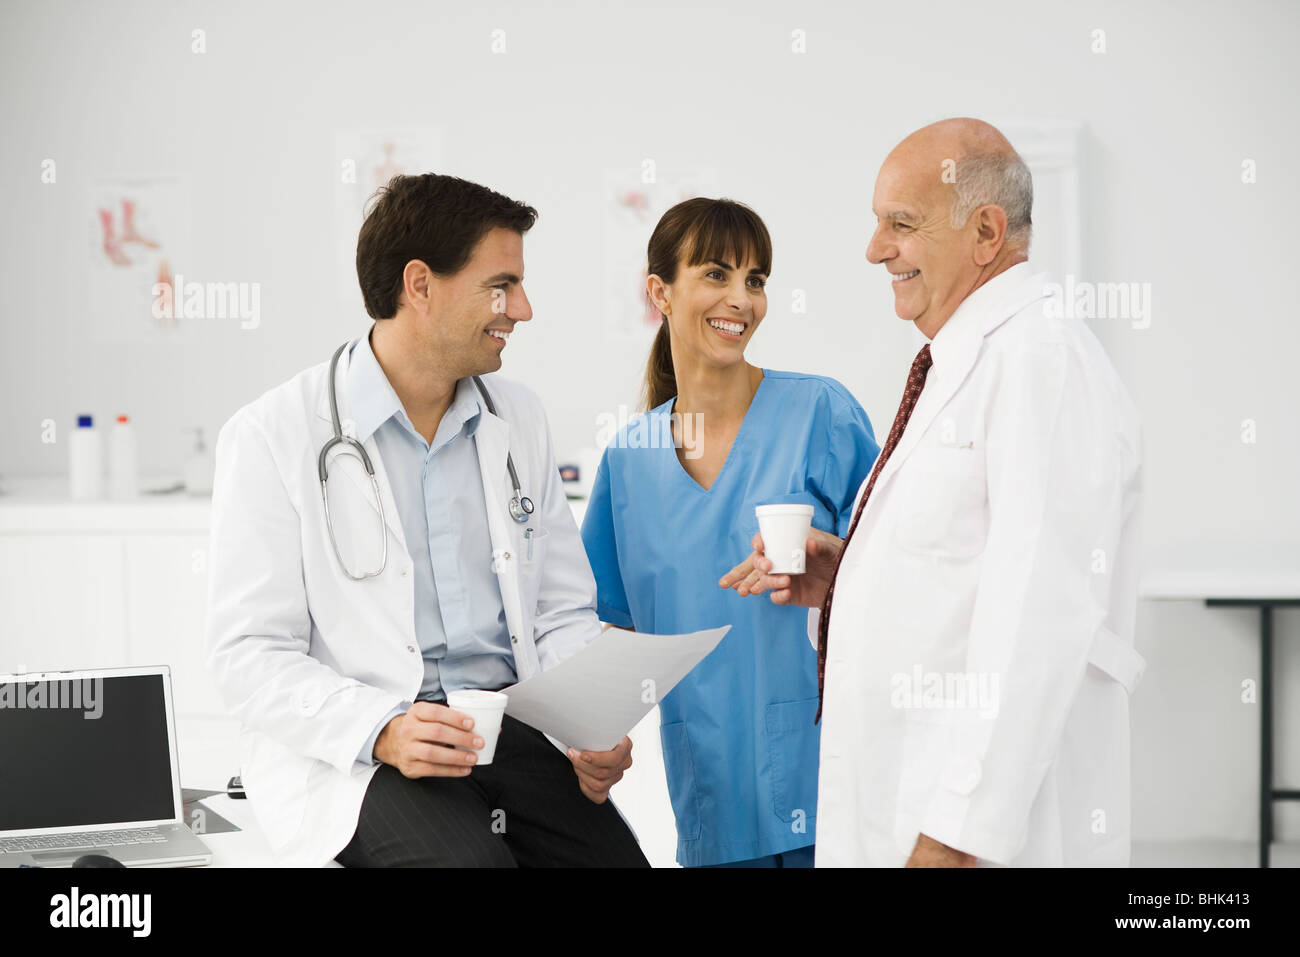 Medizinische Fachleute zusammen auf Pause Stockfoto